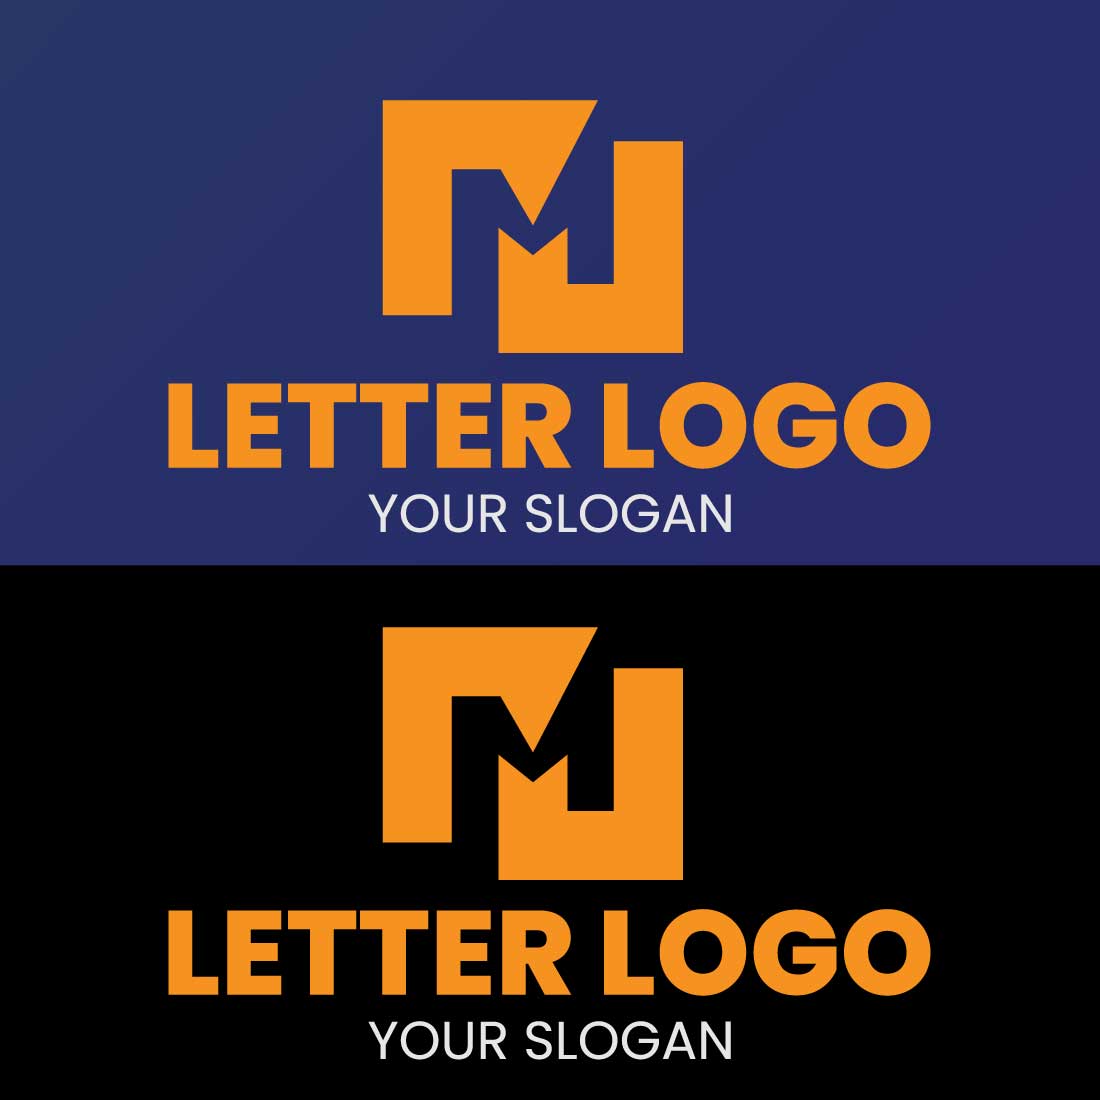 M Letter Logo Brand Logo design cover image.